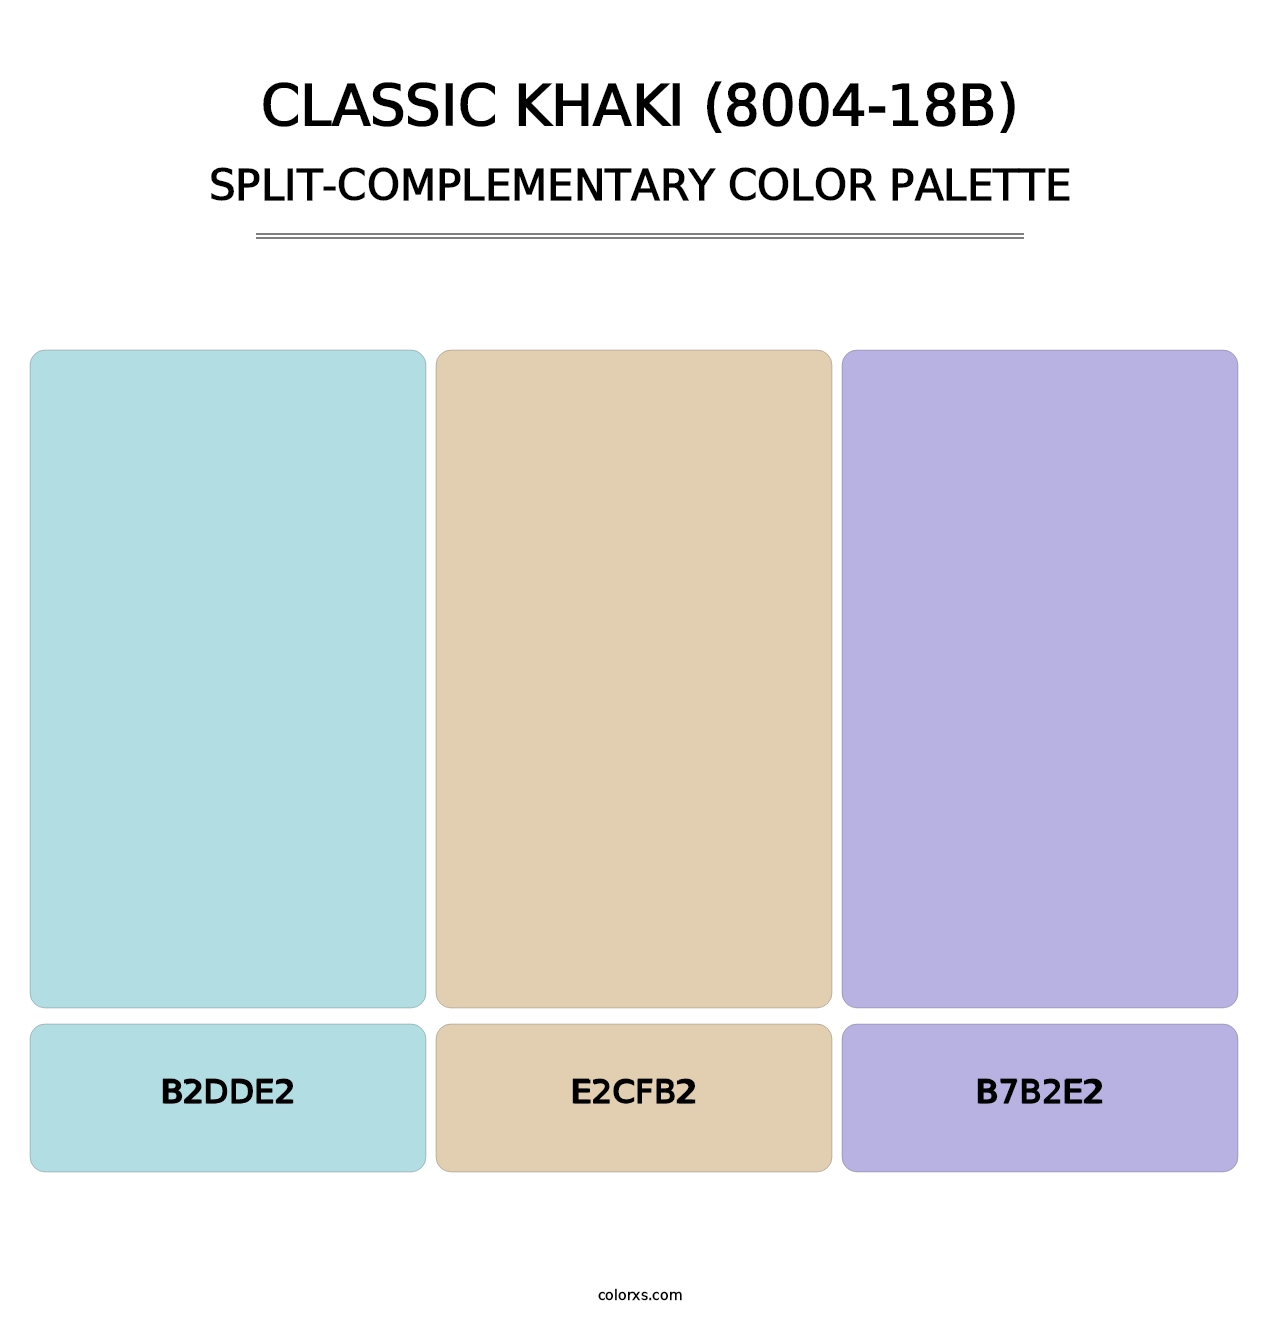 Classic Khaki (8004-18B) - Split-Complementary Color Palette